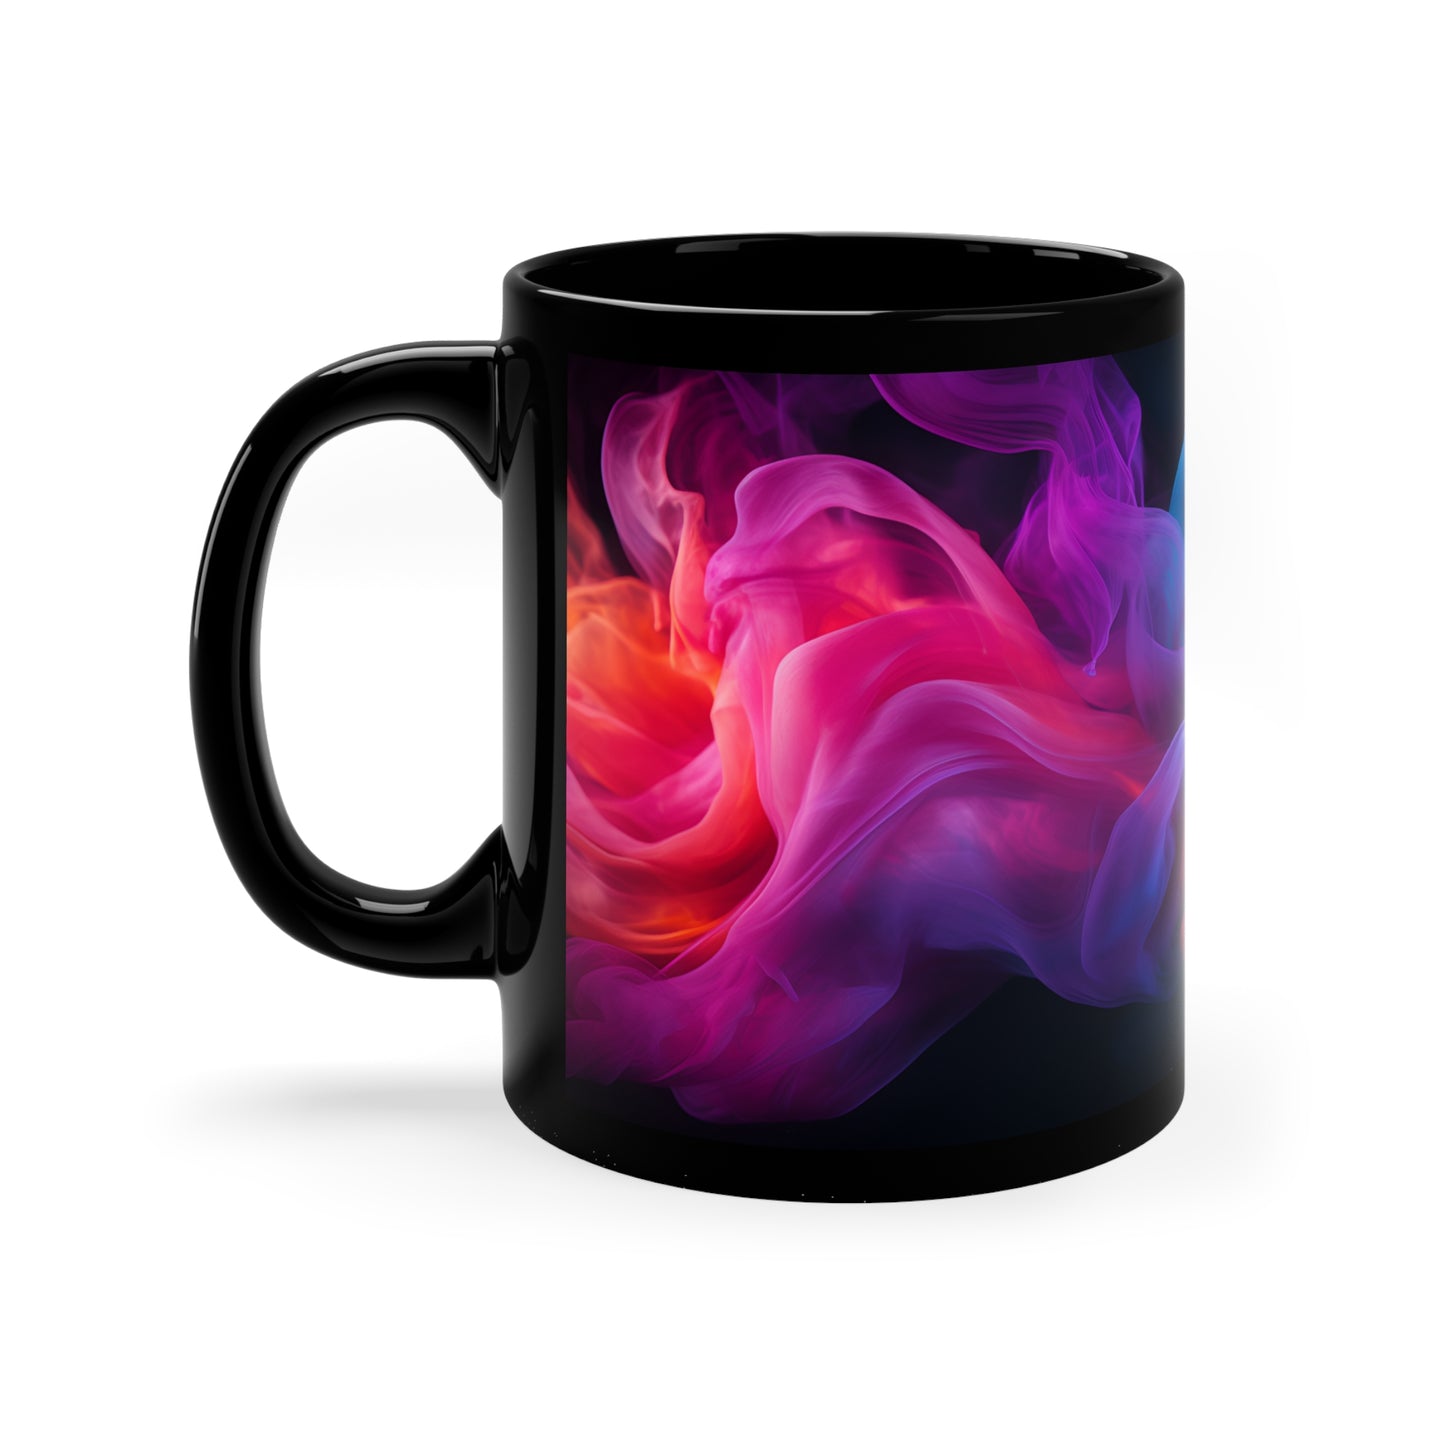 Colorful Smoke Mug - 11oz Black Mug